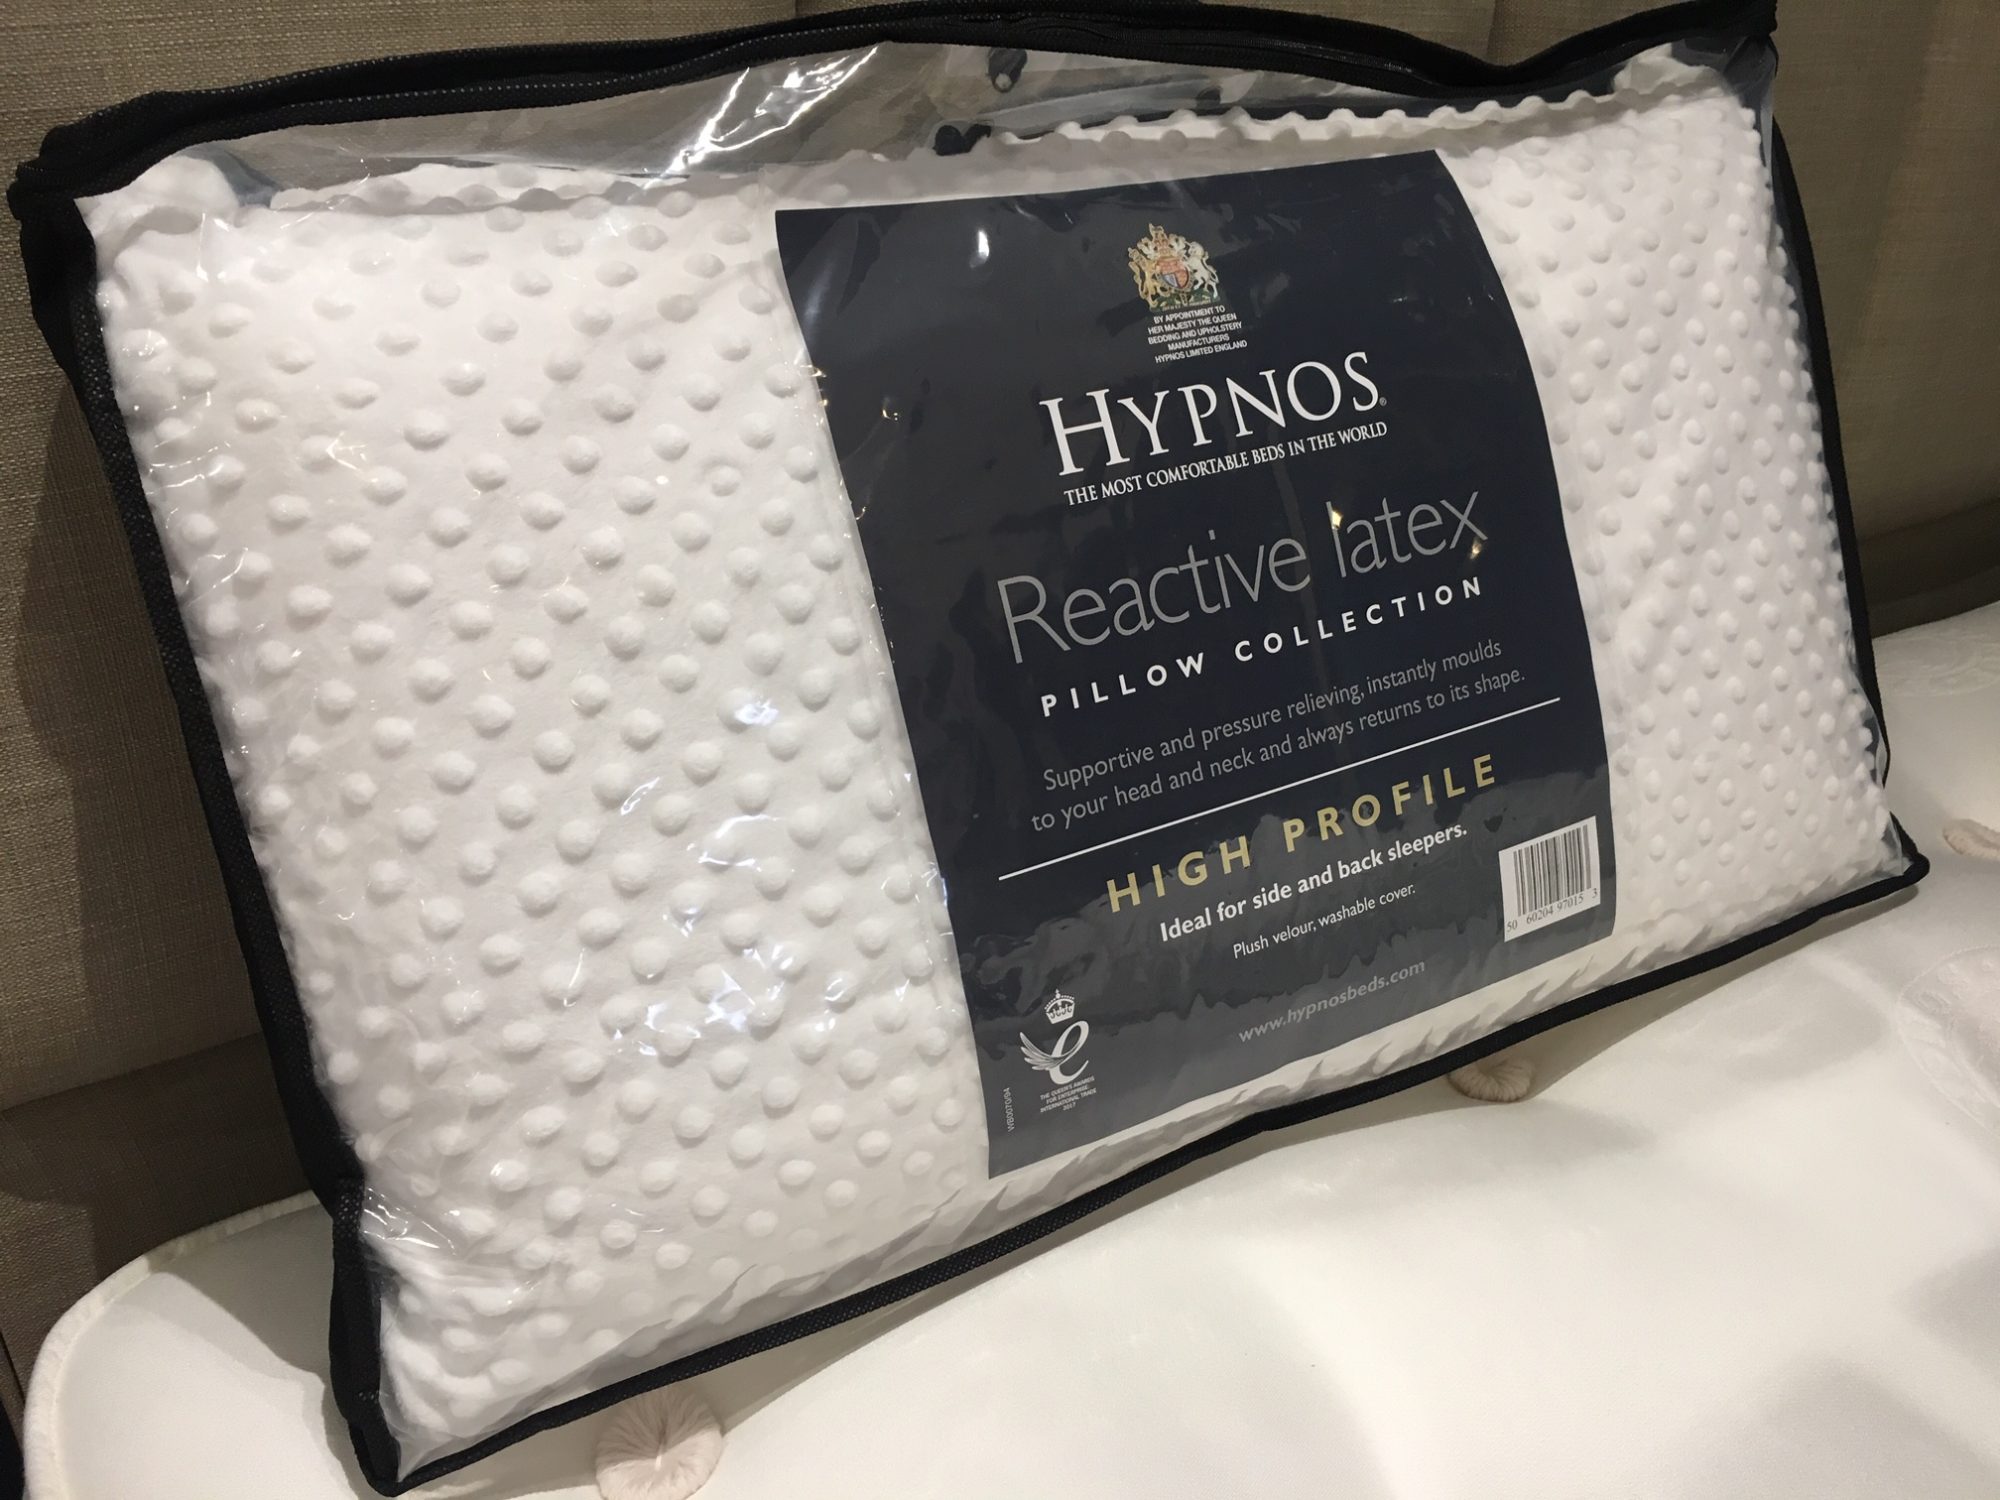 Buy Hypnos Latex Pillows at Belgica 